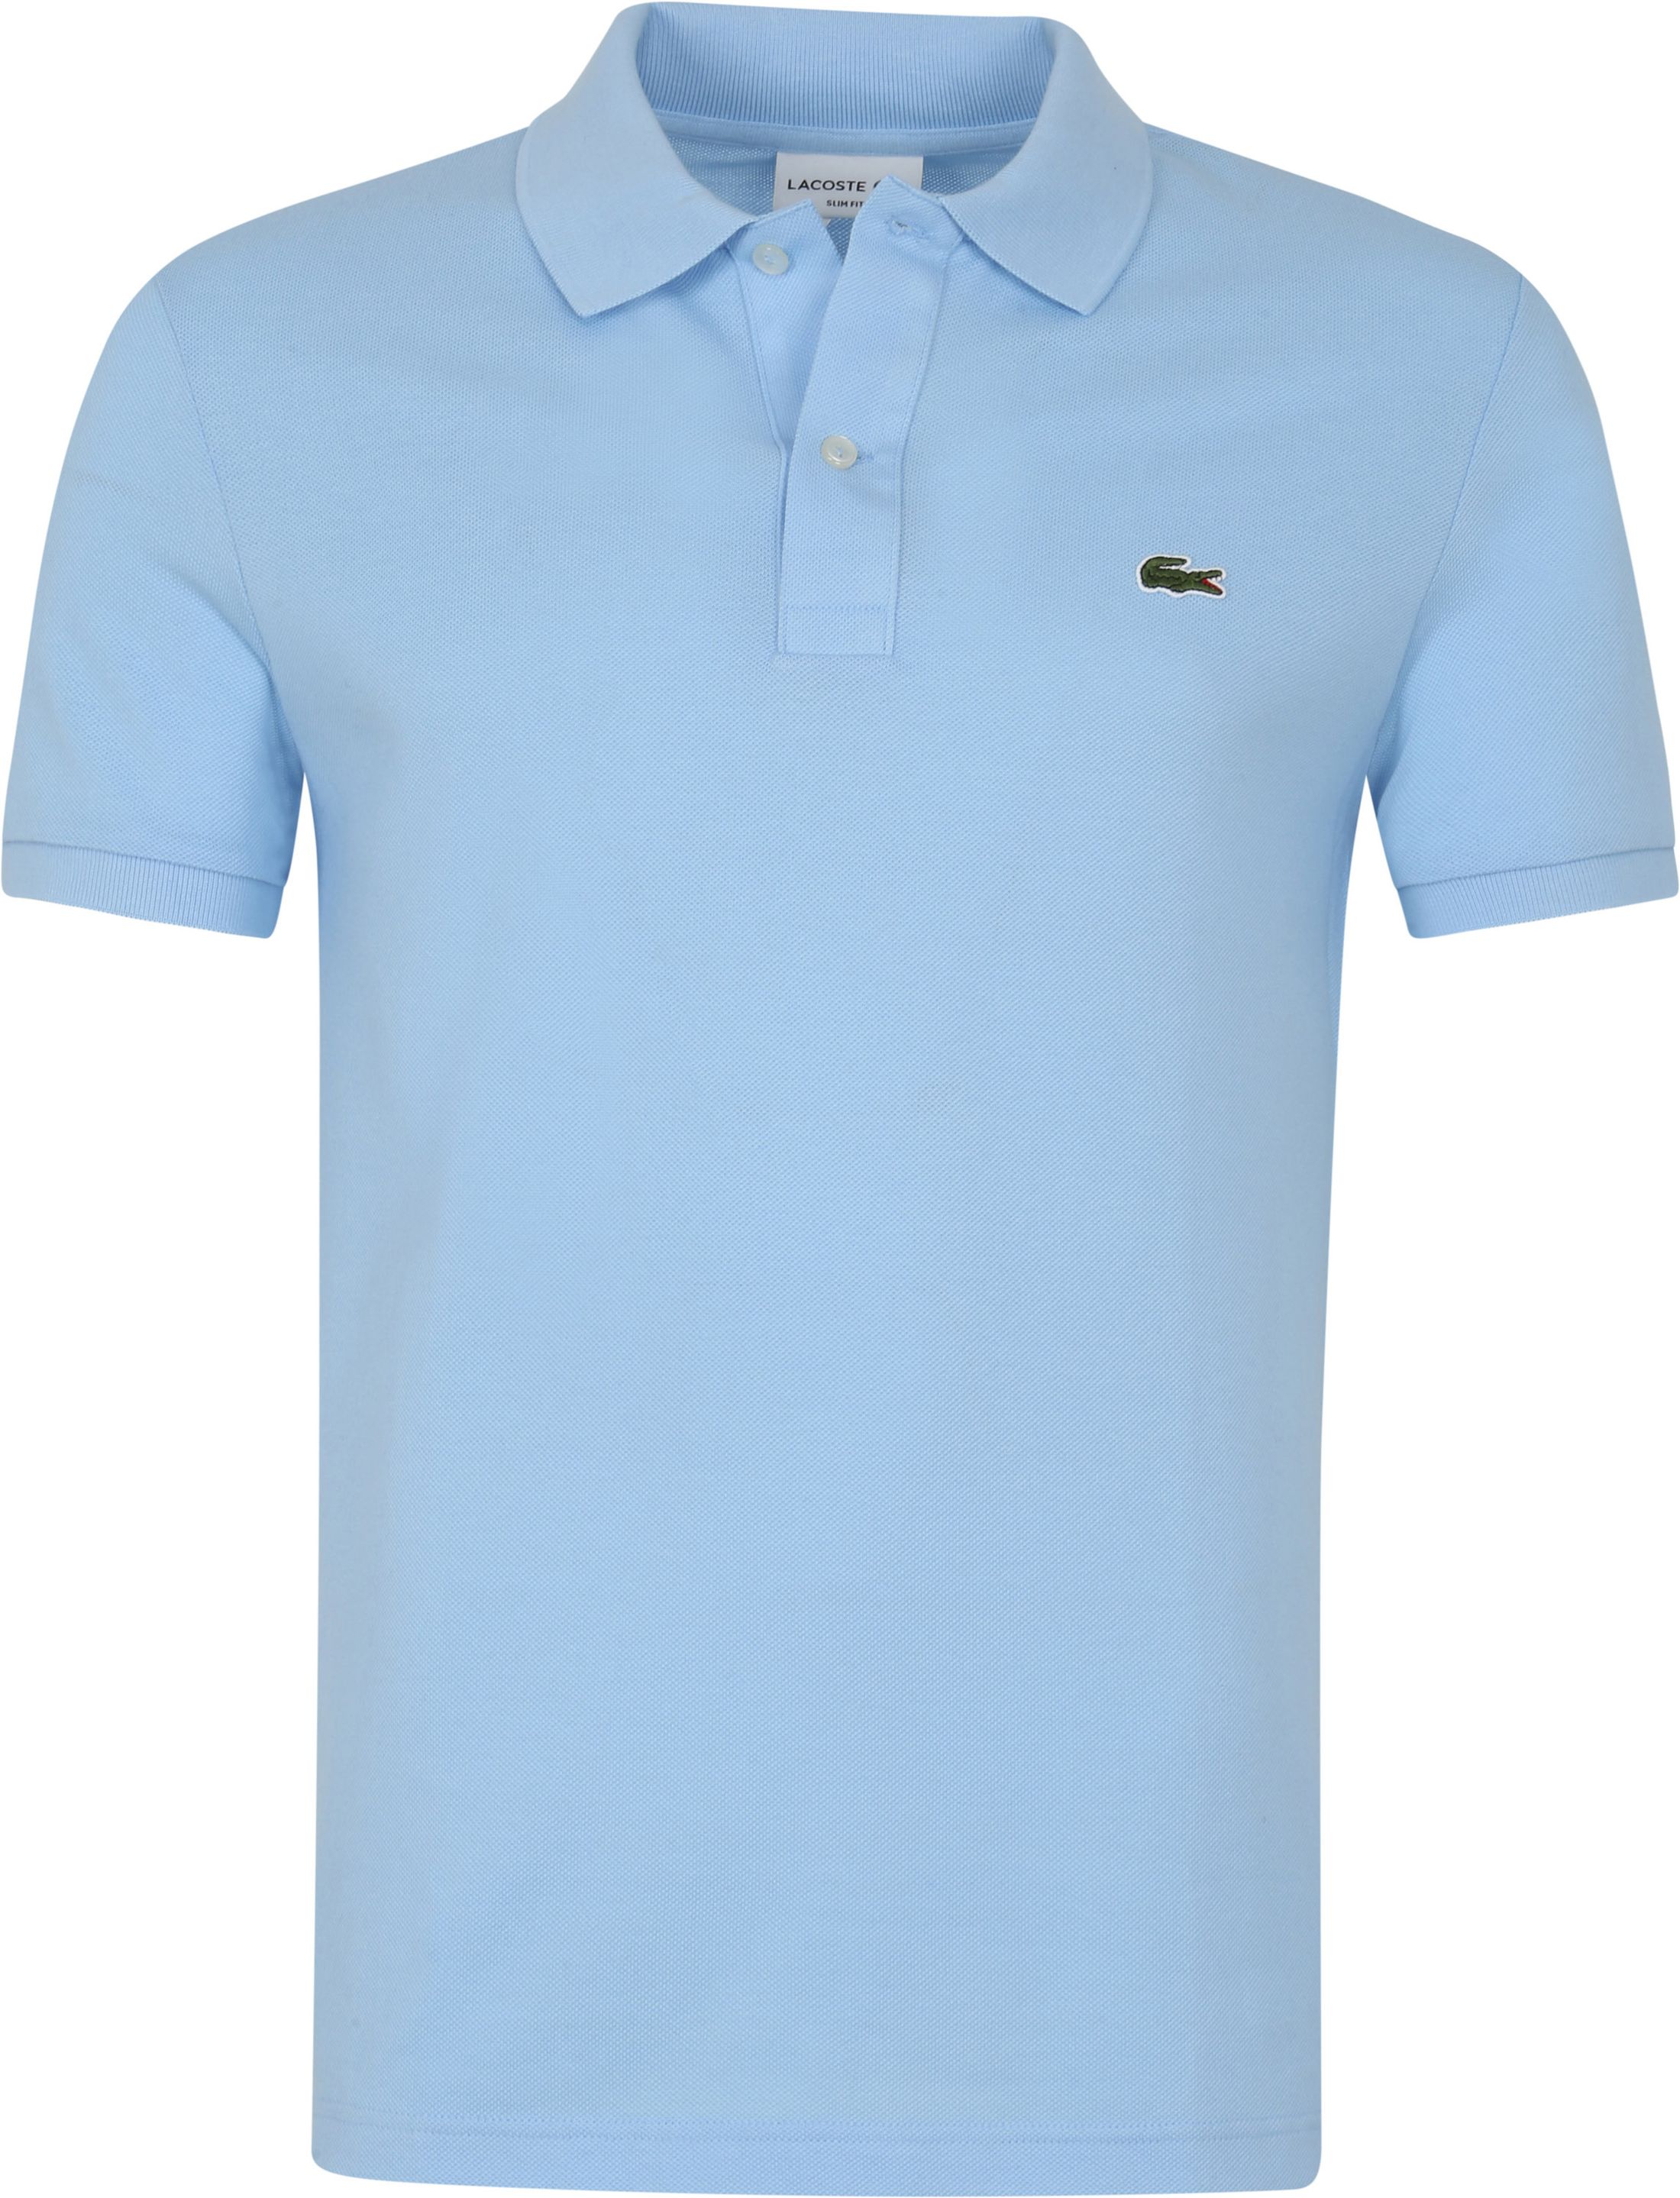 Lacoste Pique Polo Shirt Light Light blue Blue size L